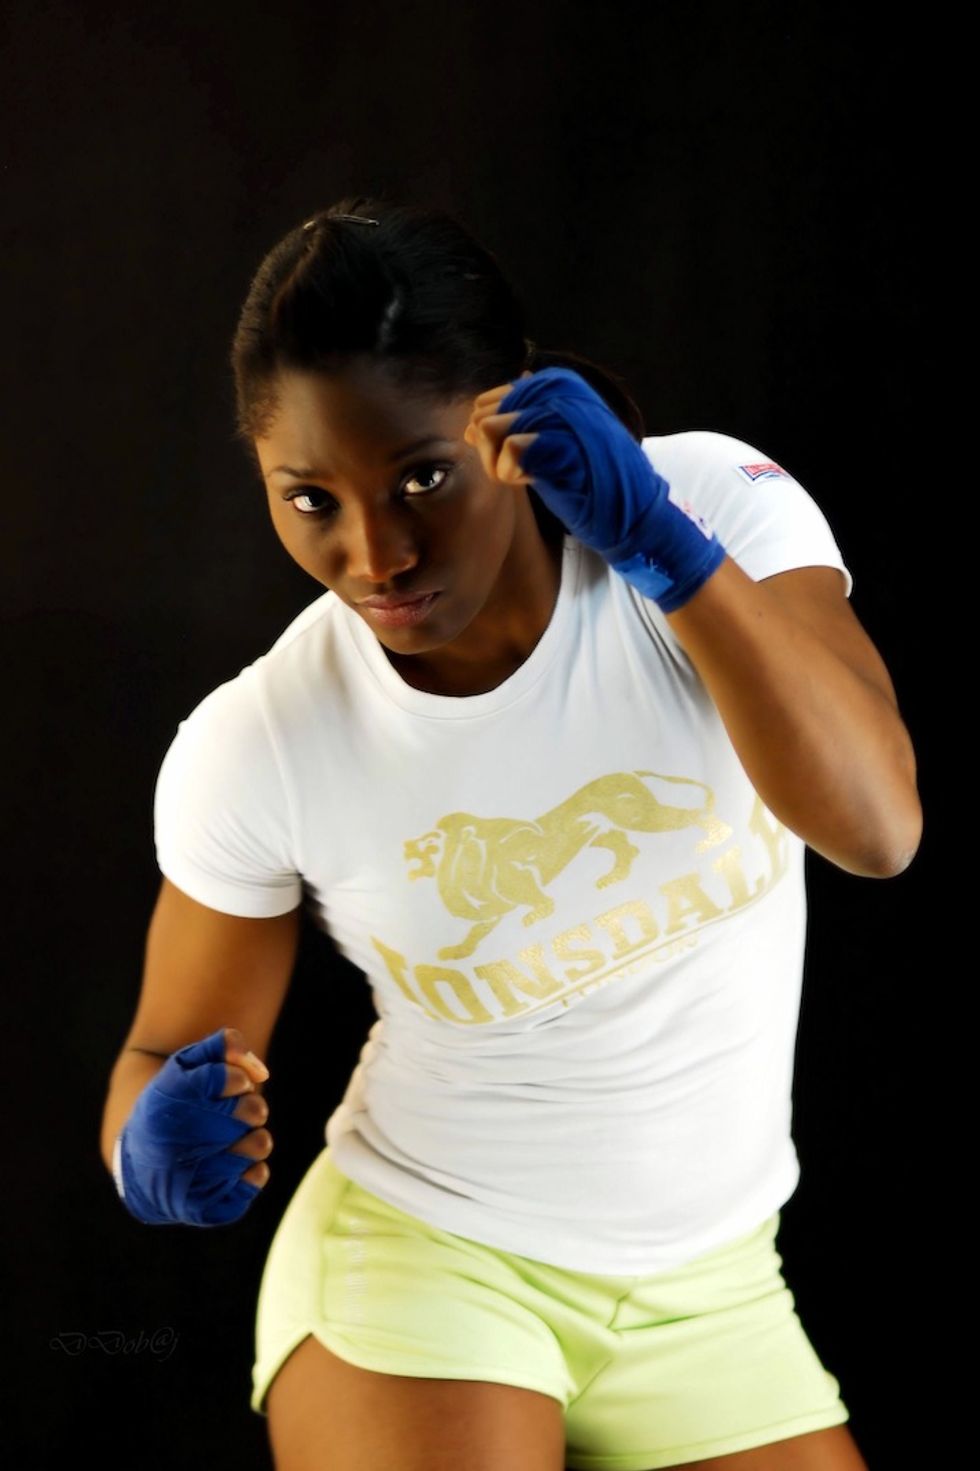 Who Wrote Togolese Boxer Bintou Yawa Schmill's Press Release?